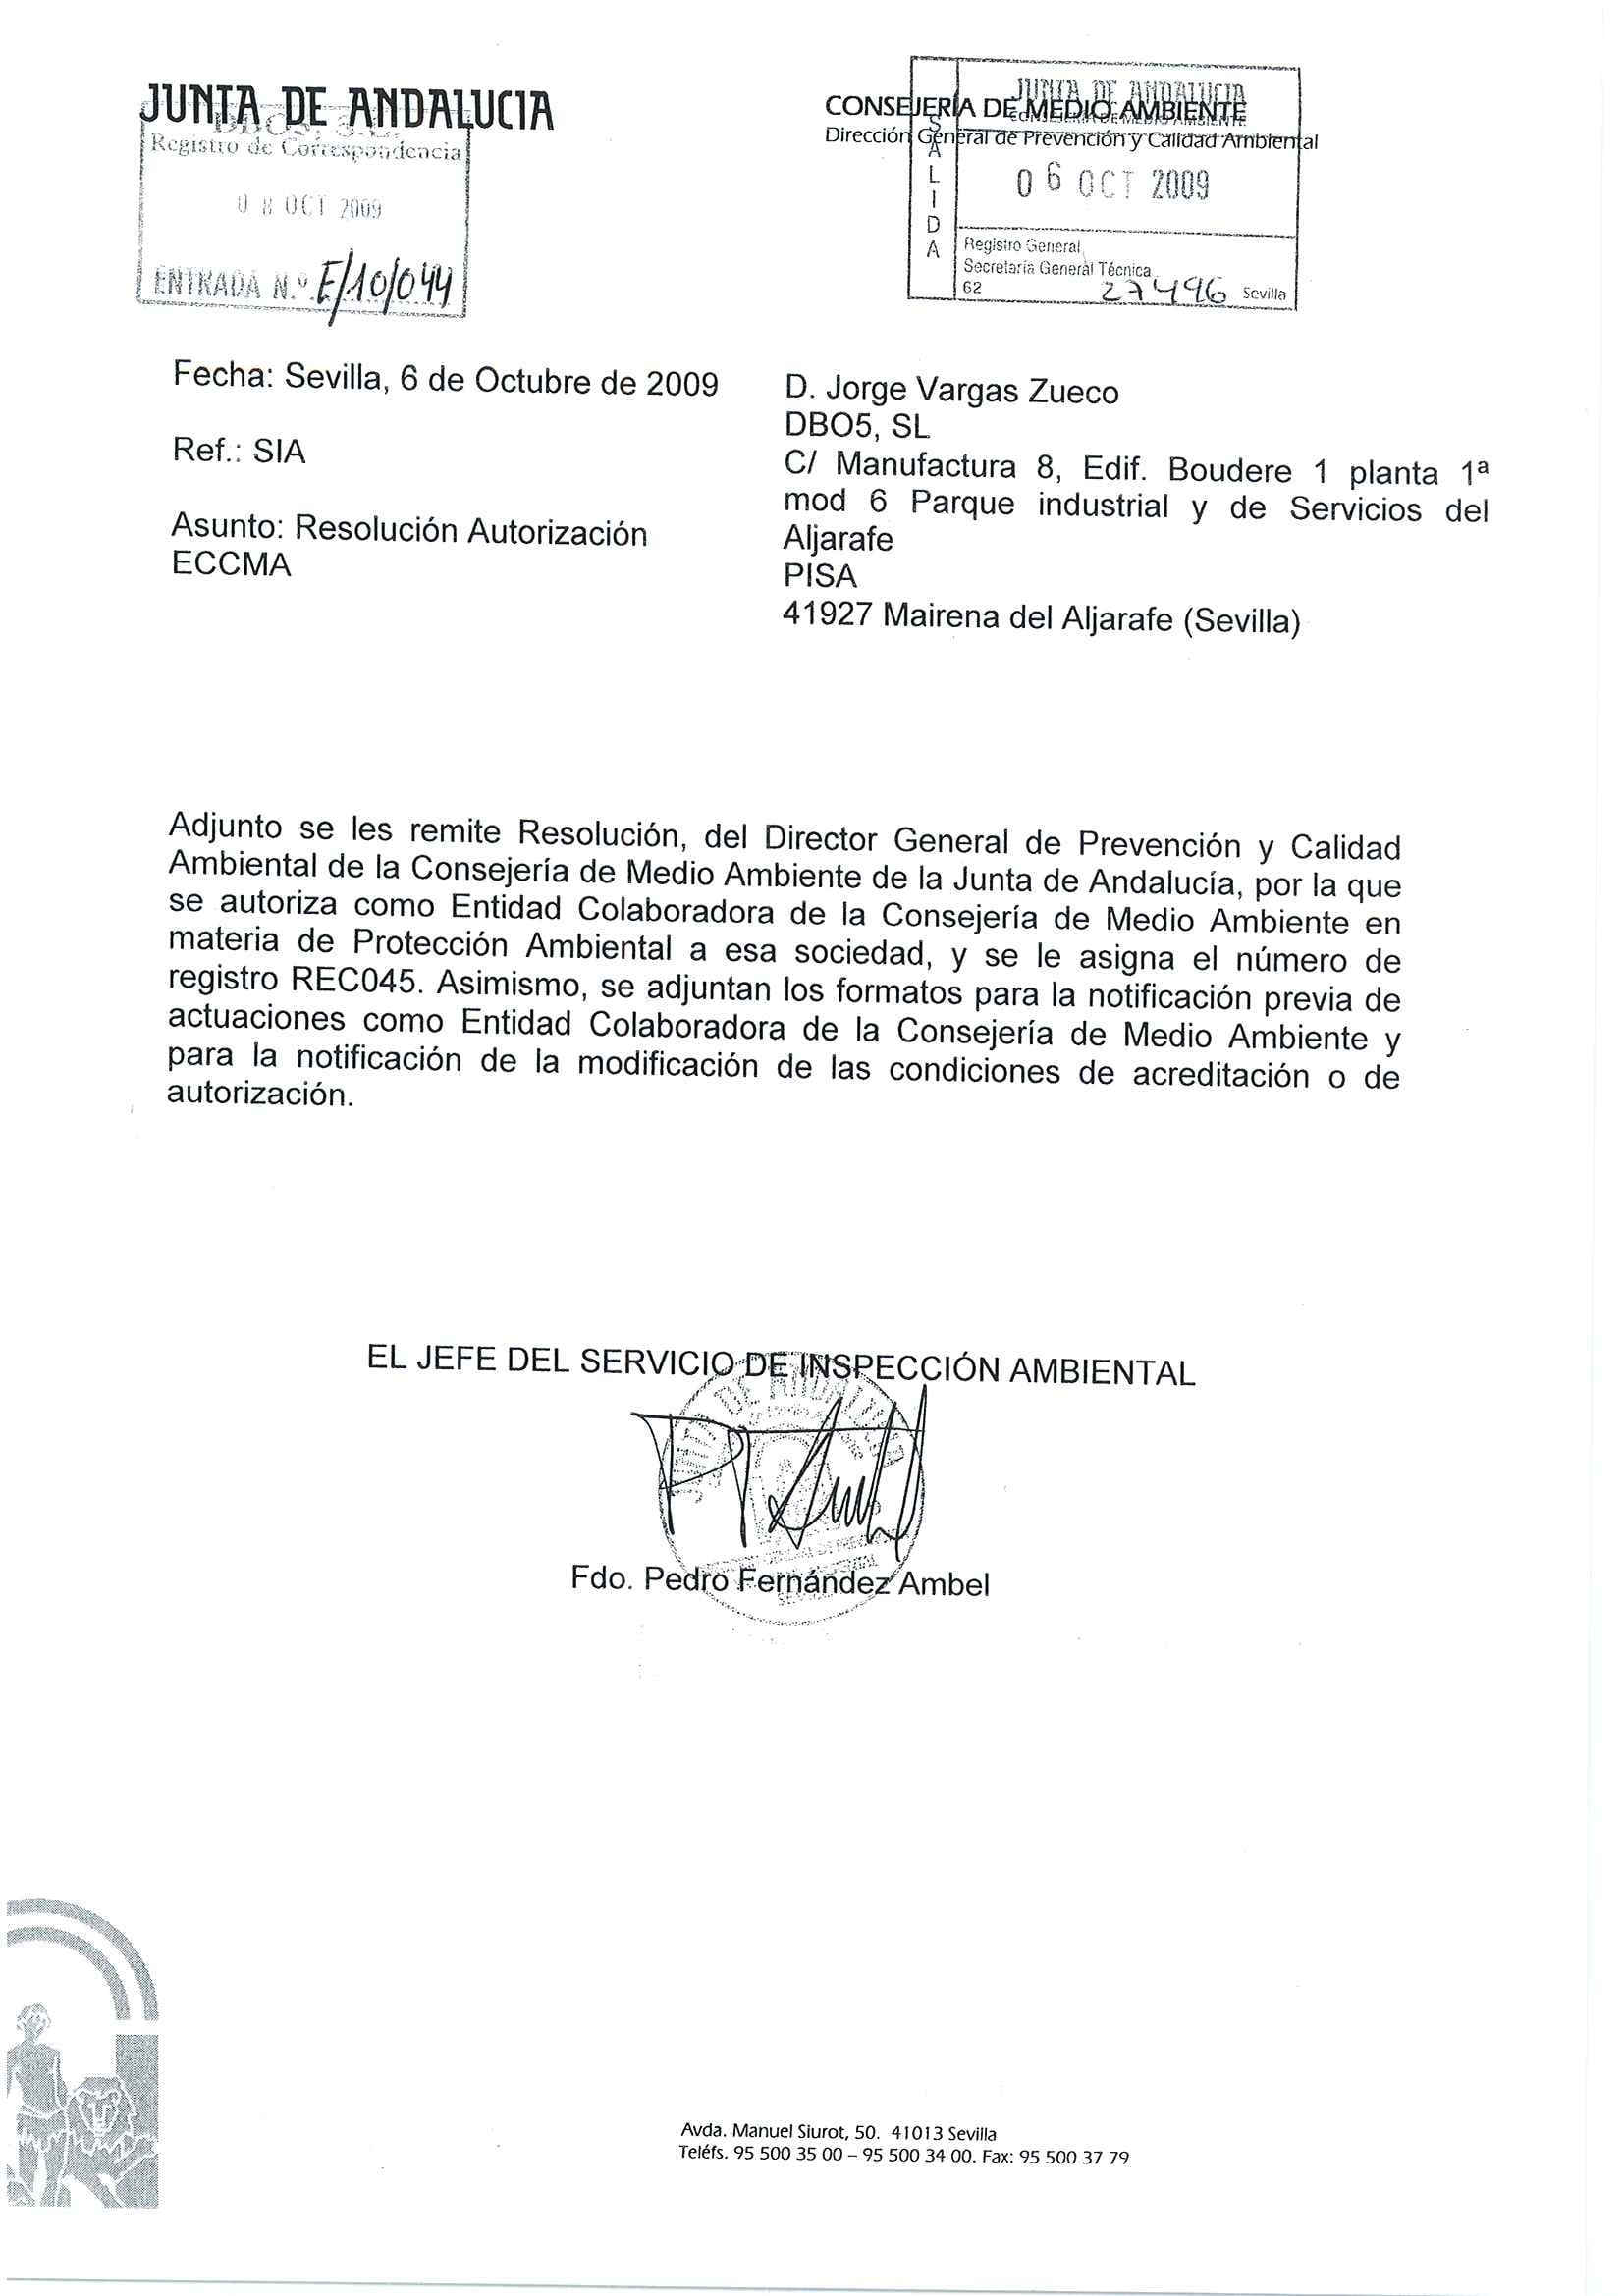 ENTIDAD COLABORADORA DE LA CONSEJERIA DE MEDIO AMBIENTE (ECCMA)